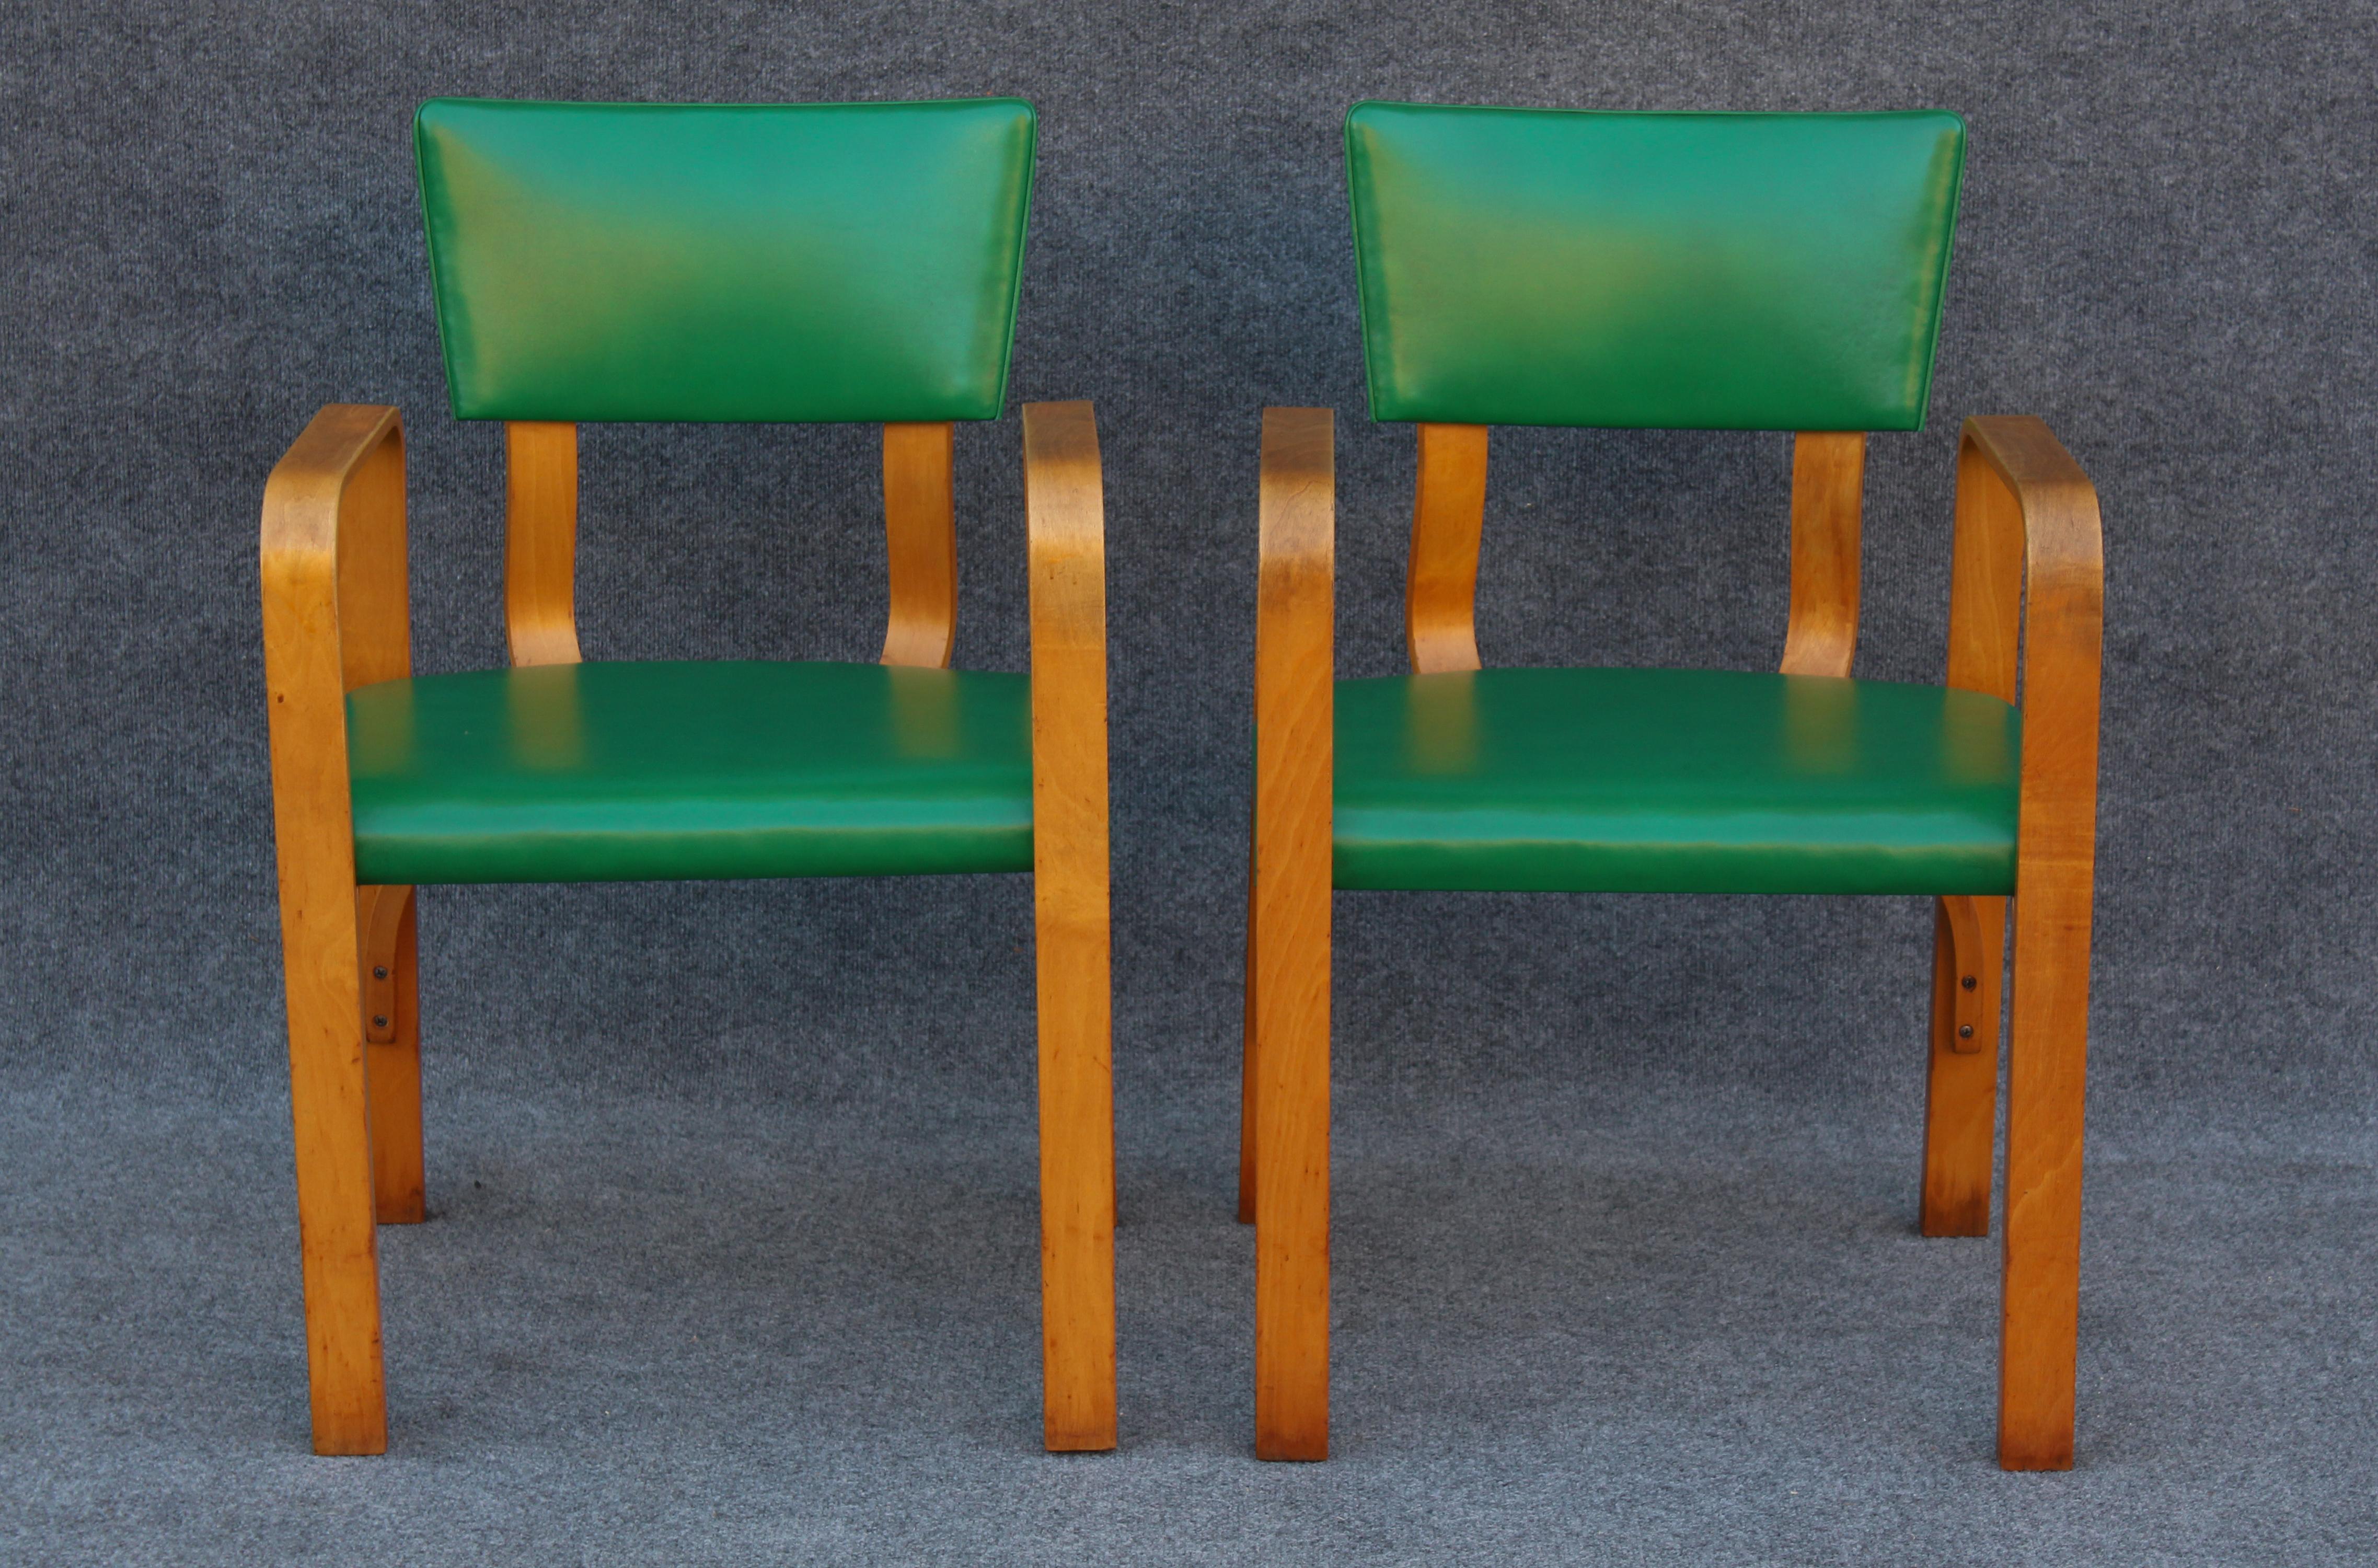 Diese Stuhlserie wurde Anfang der 1960er Jahre von Thonet entworfen, hergestellt und in den Vereinigten Staaten vertrieben. Das Unternehmen Thonet entstand in den 1850er Jahren in Deutschland, nachdem der Gründer Michael Thonet mit einer